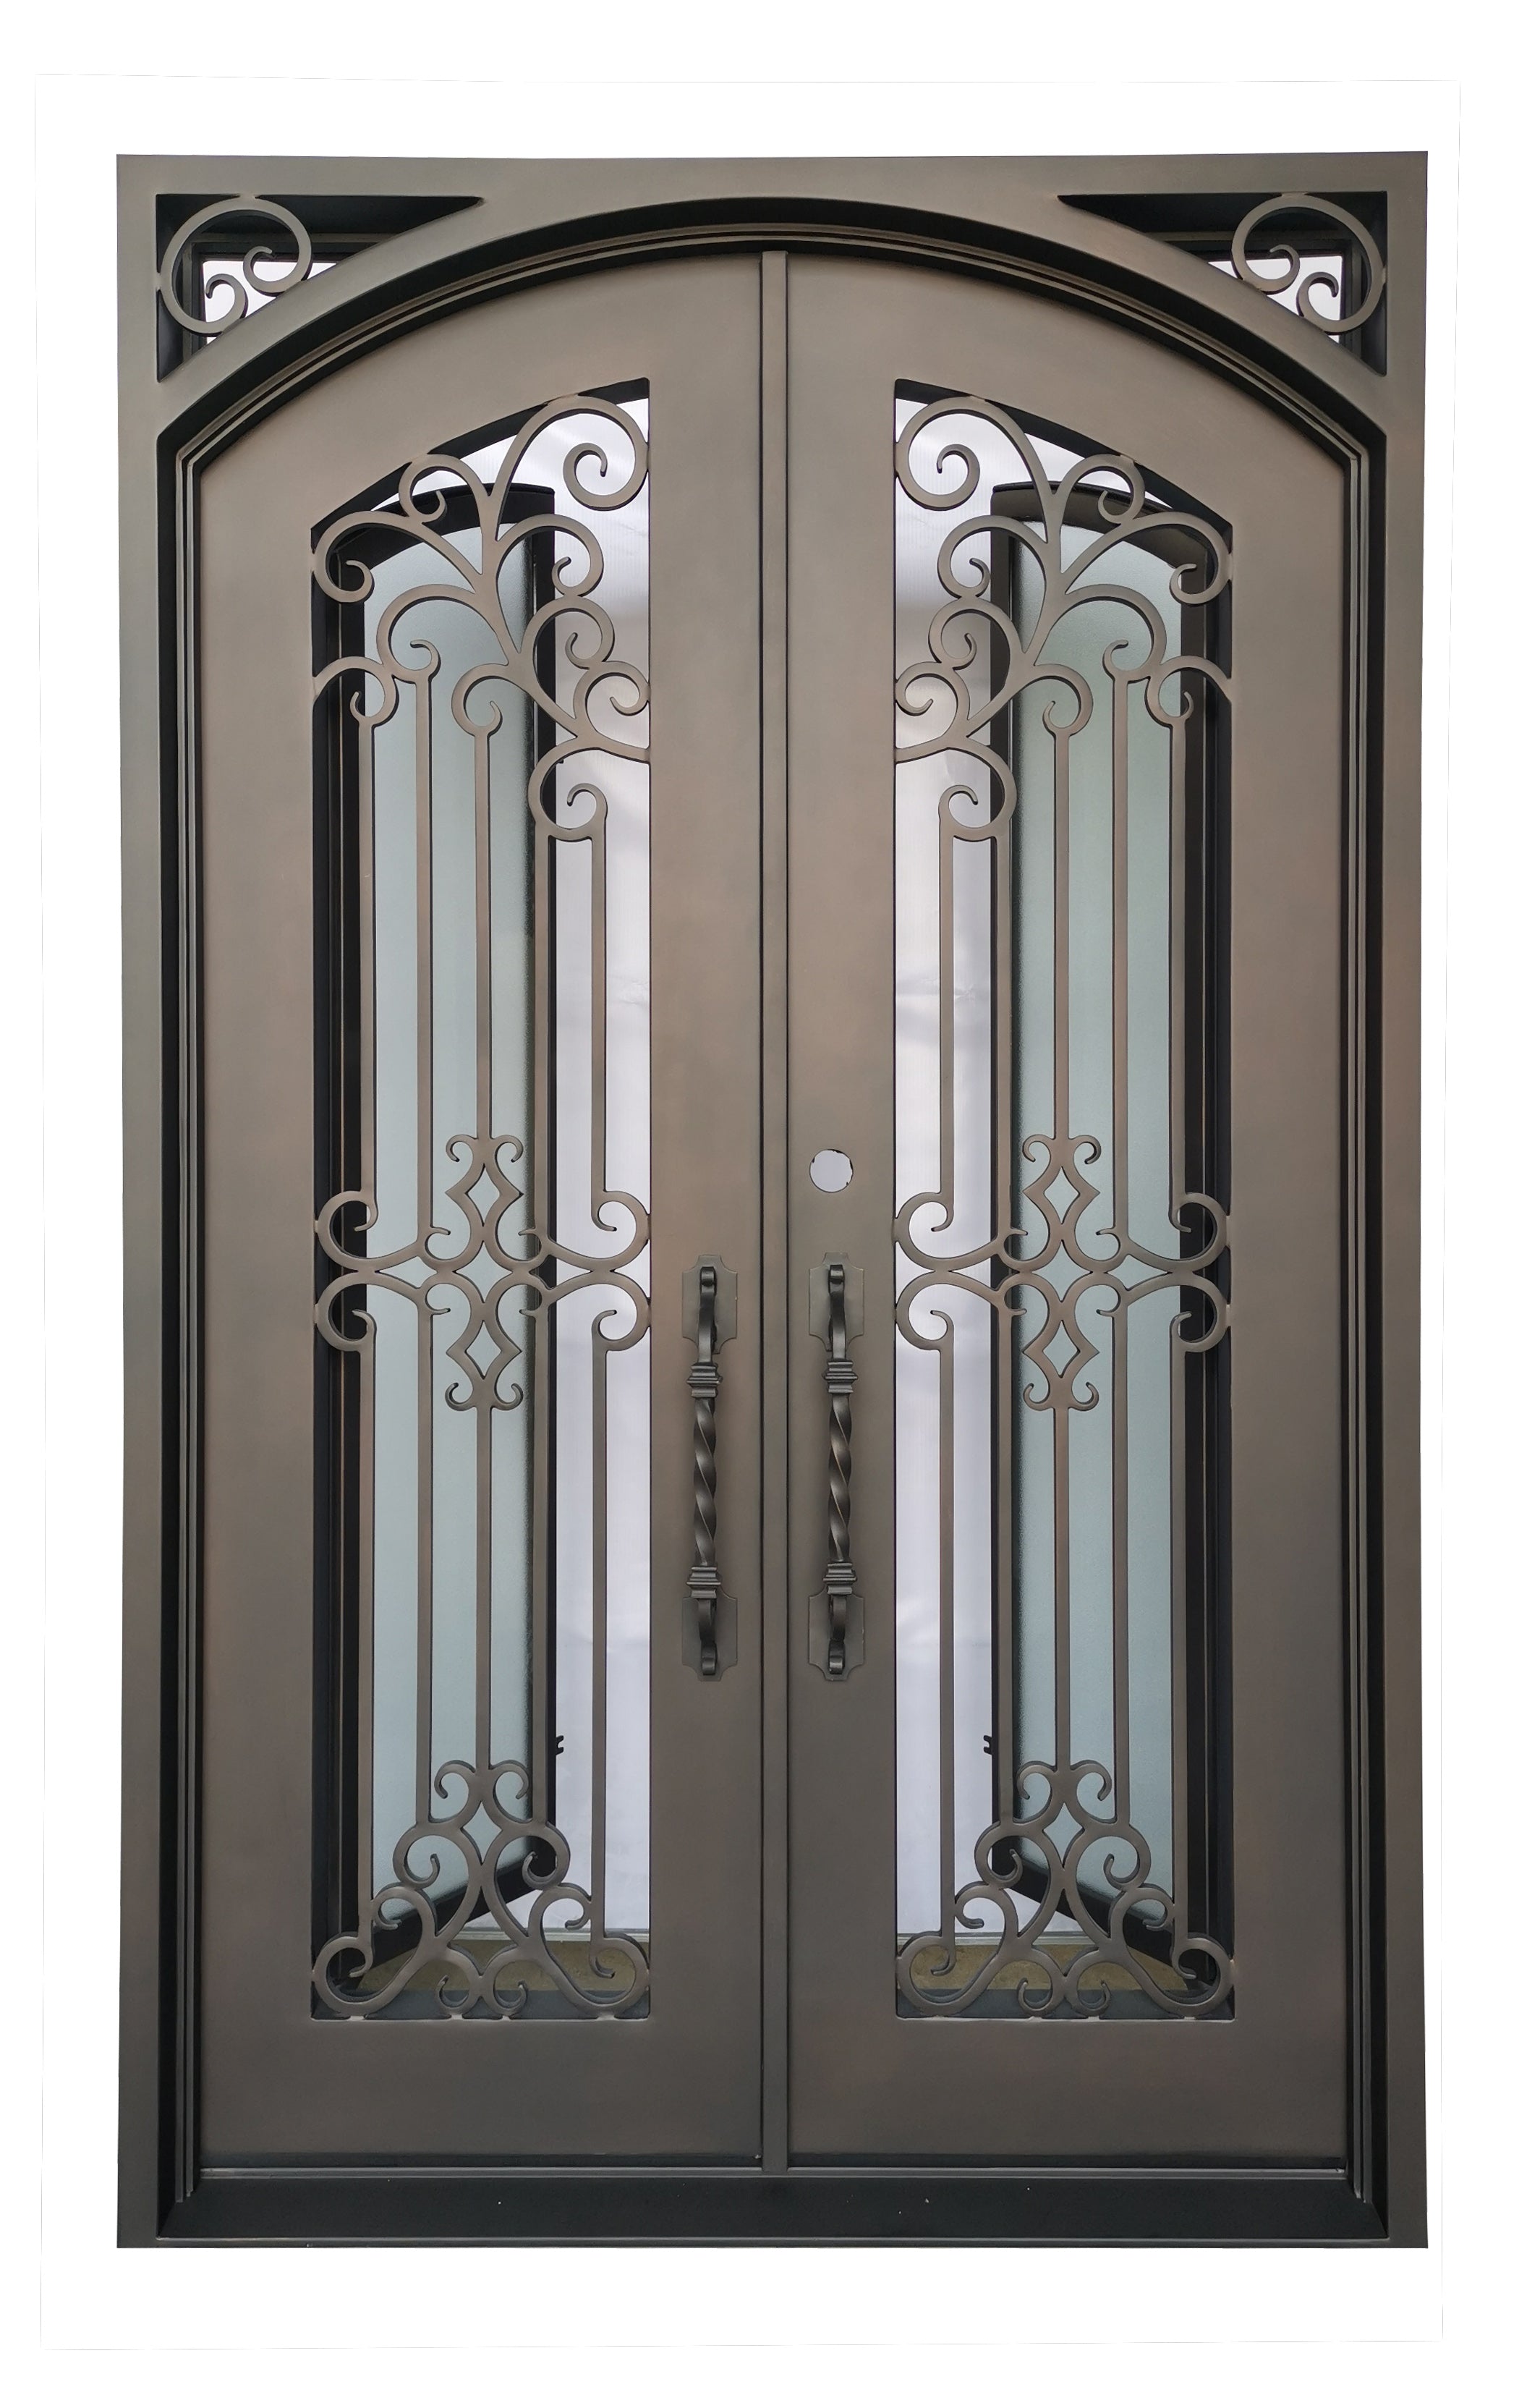 Hidalgo Model Double Front Entry Iron Door With Tempered Aqua Lite Glass Dark Bronze Finish - AAWAIZ IMPORTS